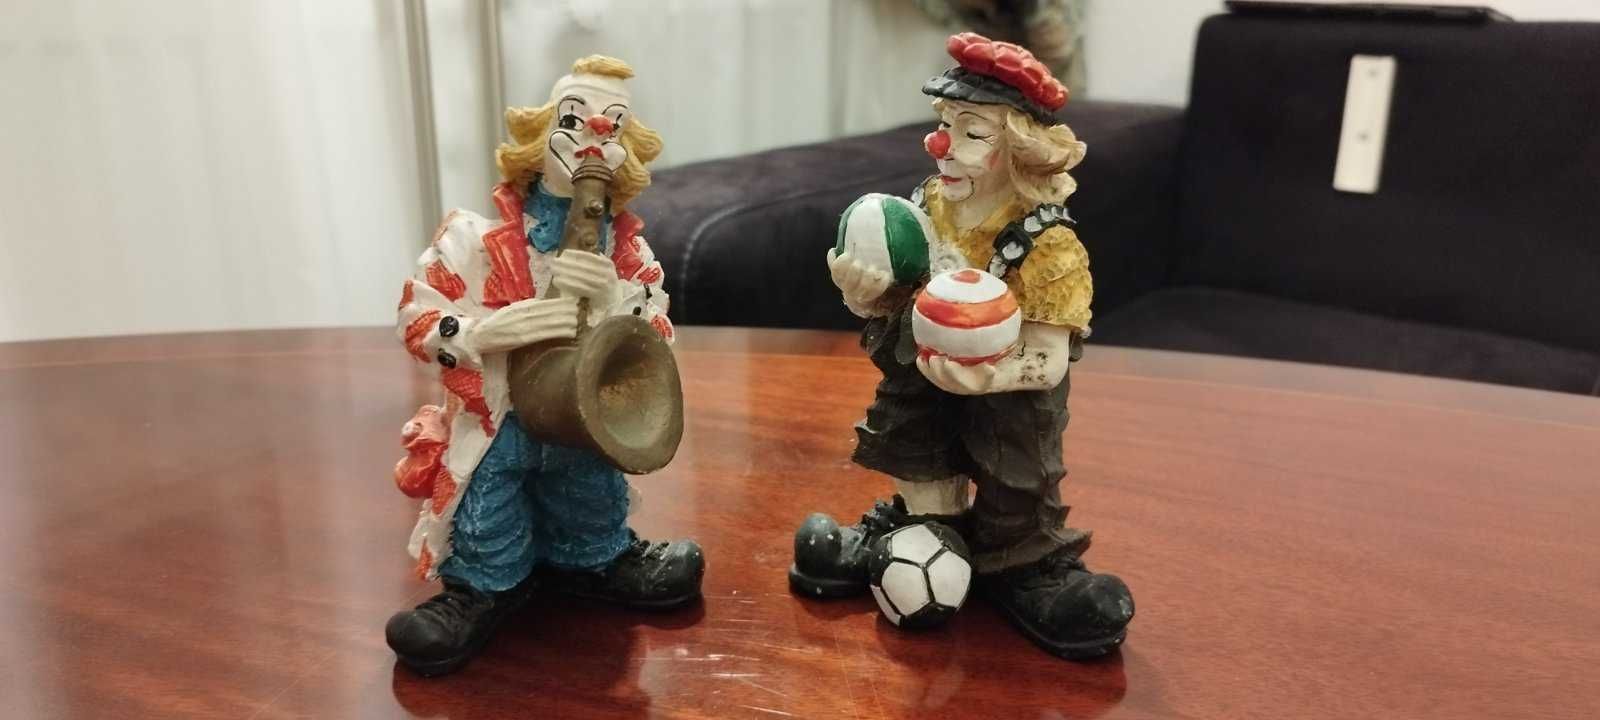 Немецкие,раритетные статуэтки "Клоуны" Германия.